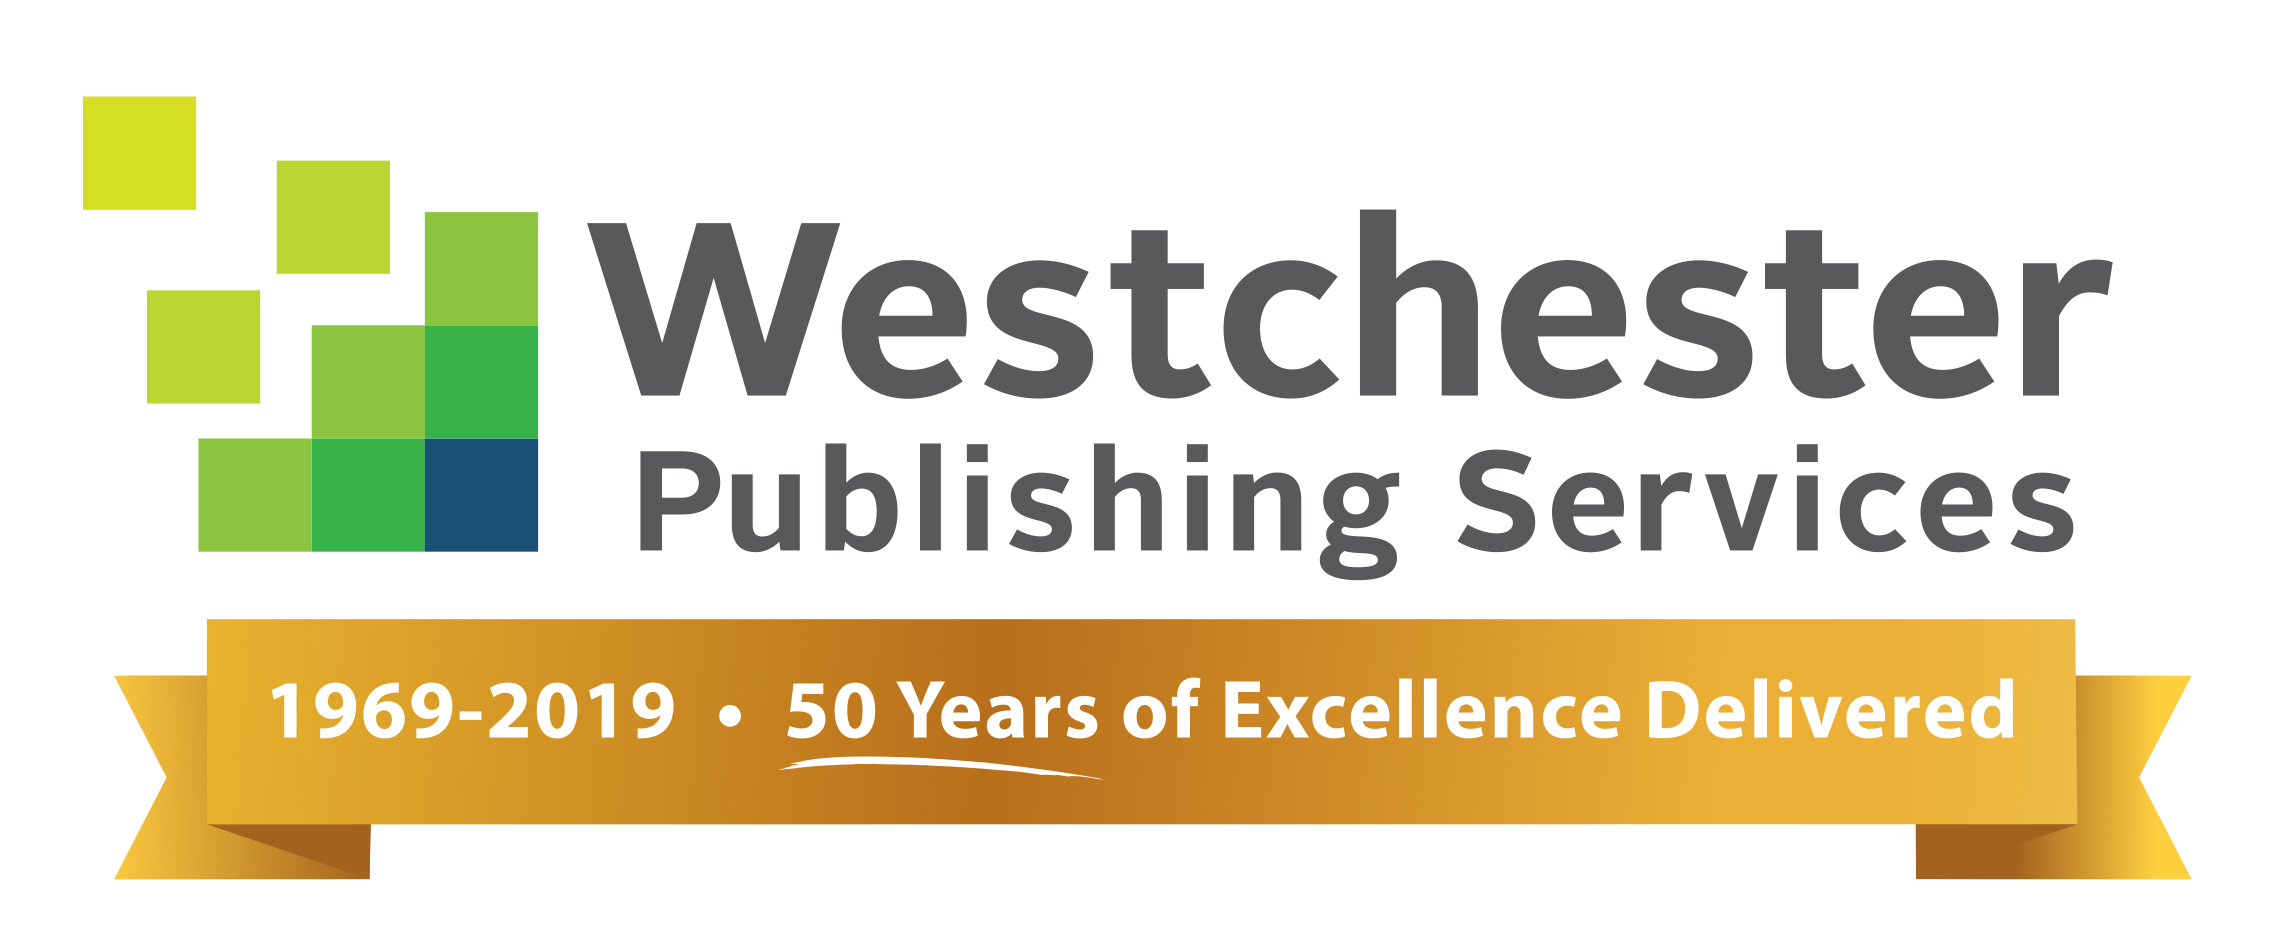 Westchester_50Anniversary_logo_final-Gold.jpg